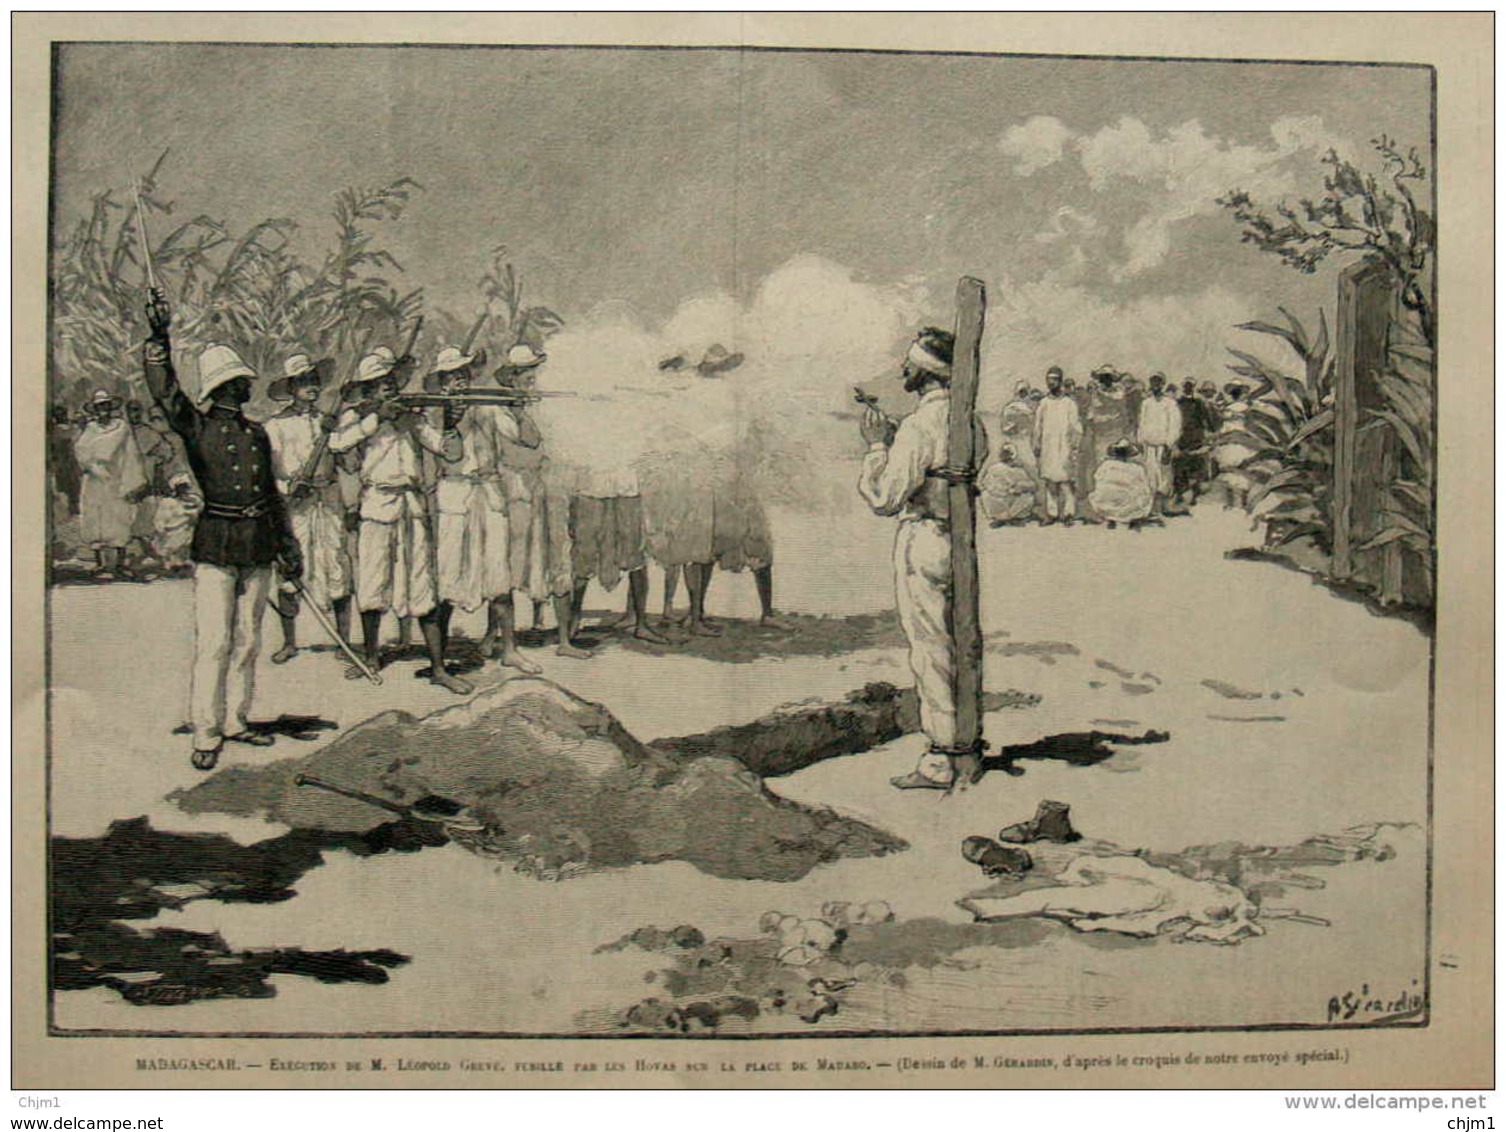 Madagascar - Exécution De M. Leopold Greve, Fusillé Par Les Hovas Sur Le Place De Mahabo - Page Original 1895 - Documents Historiques